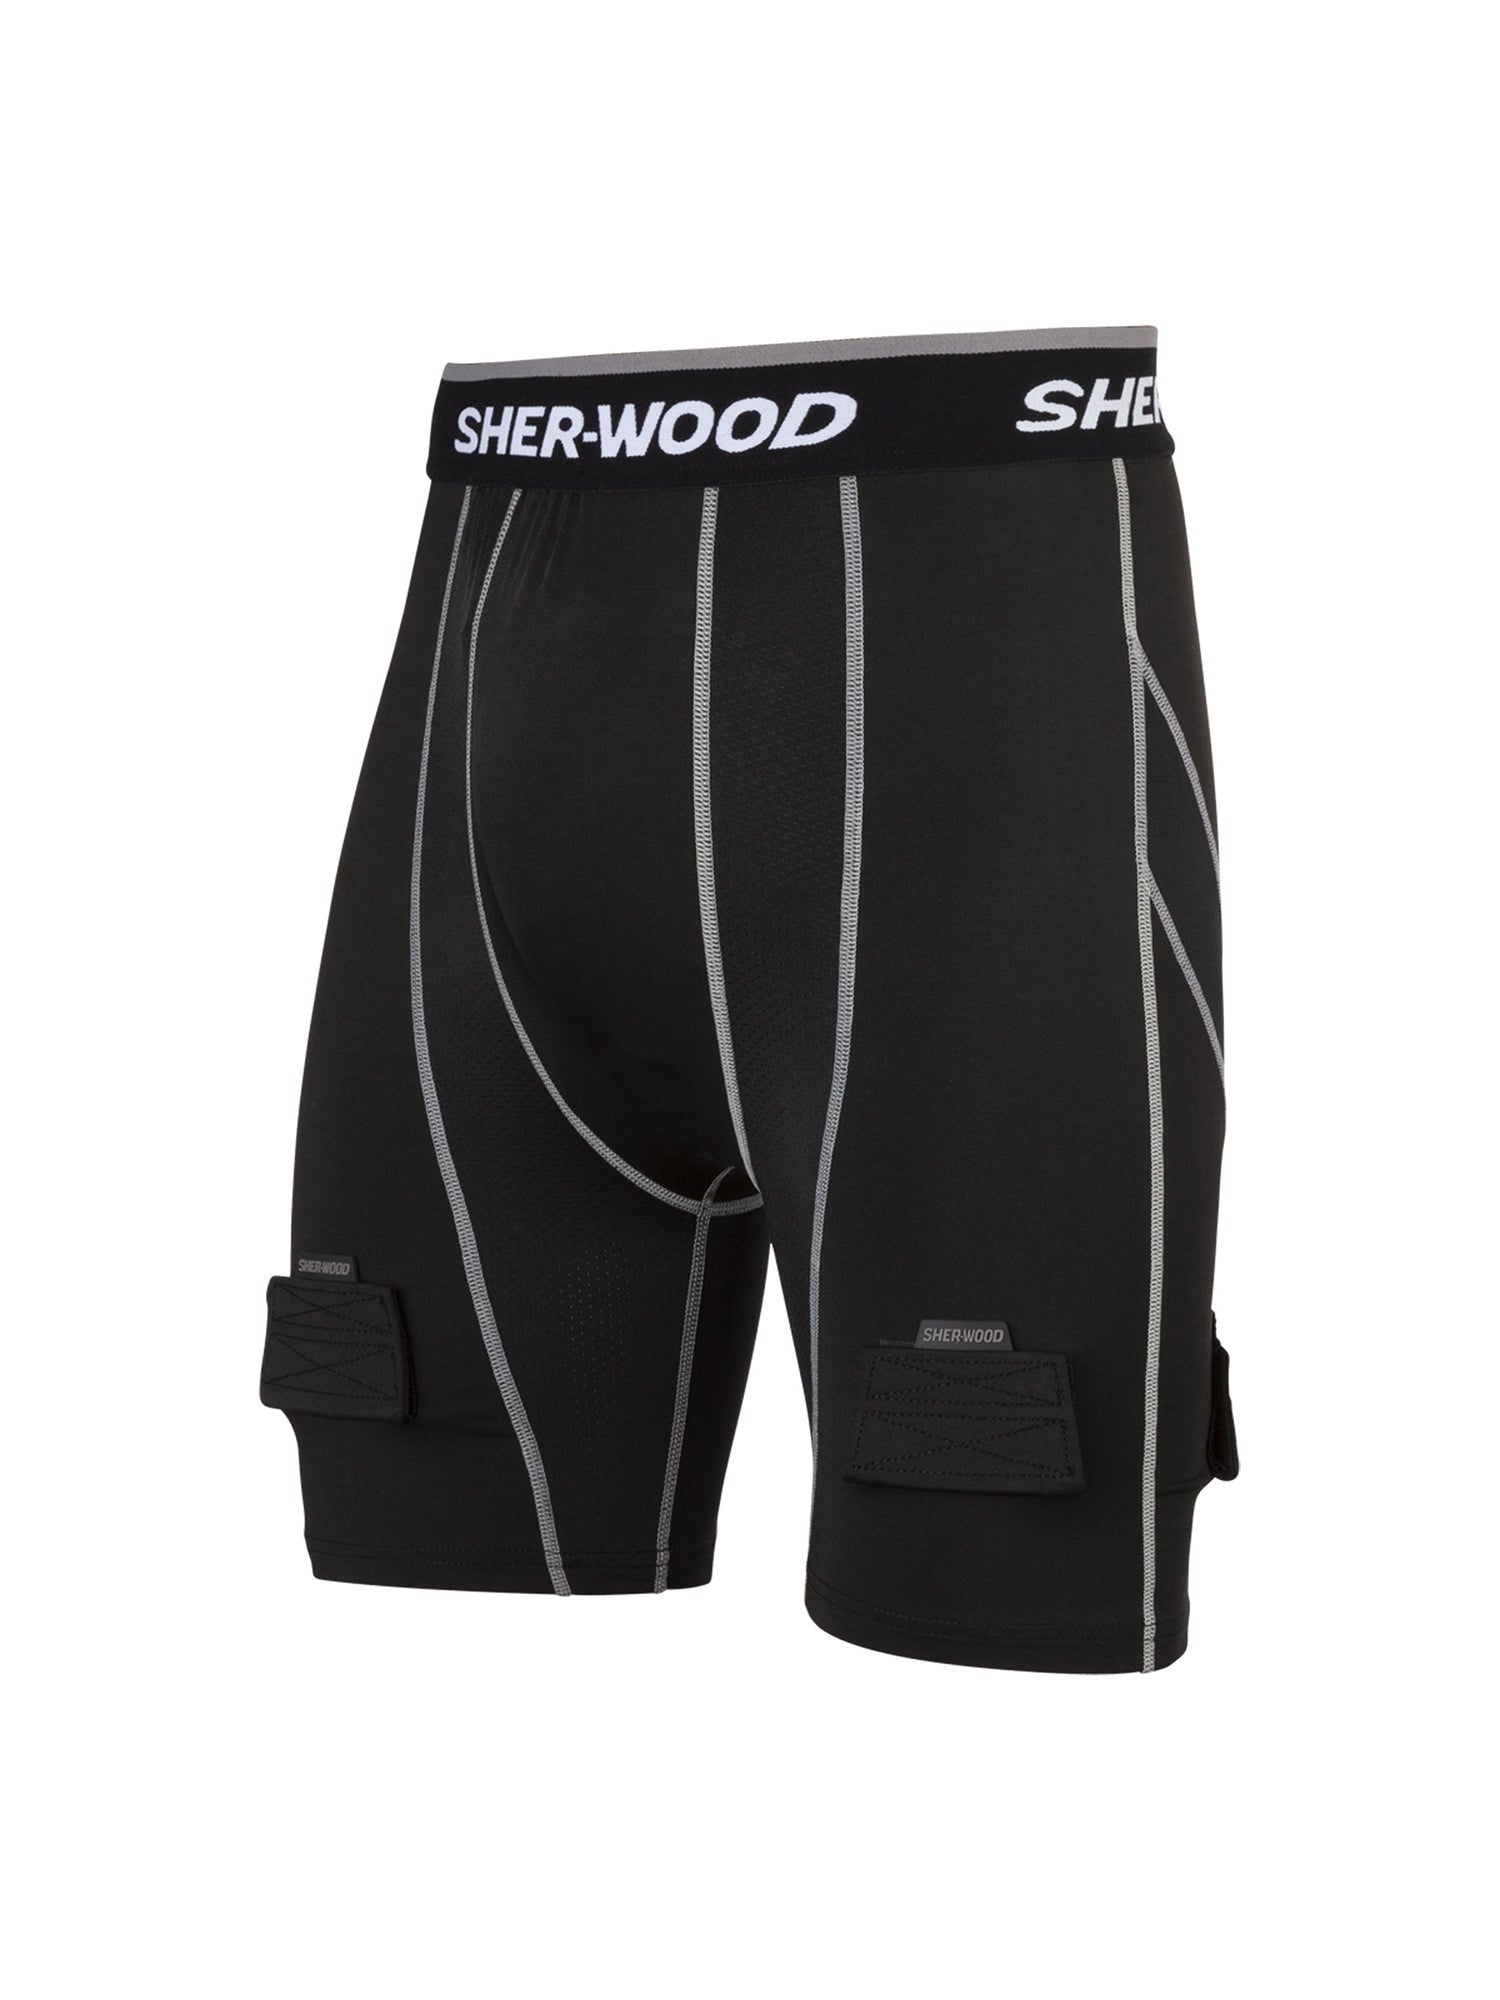 Sherwood Rekker Cut Resistant Compression Women's Jill Shorts w/ Cup